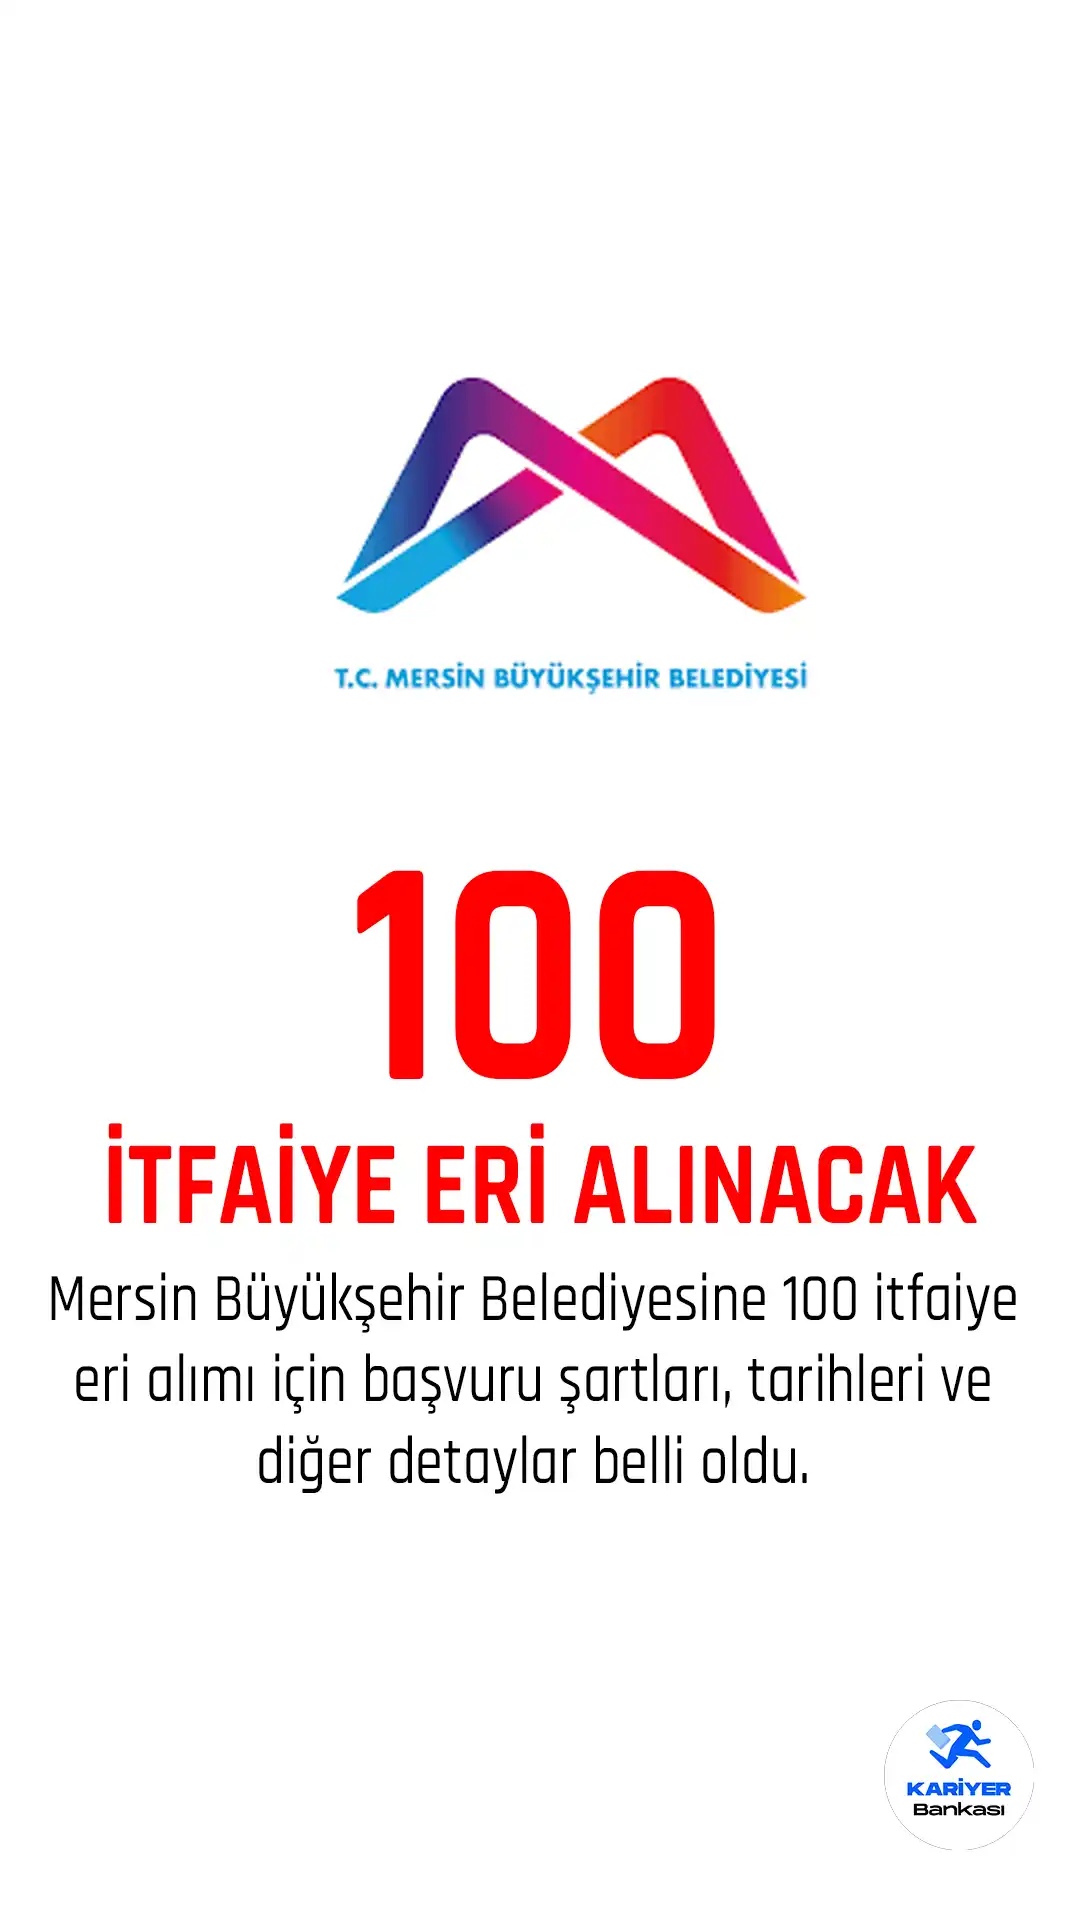 Mersin Büyükşehir Belediyesi 100 itfaiye eri alacak.